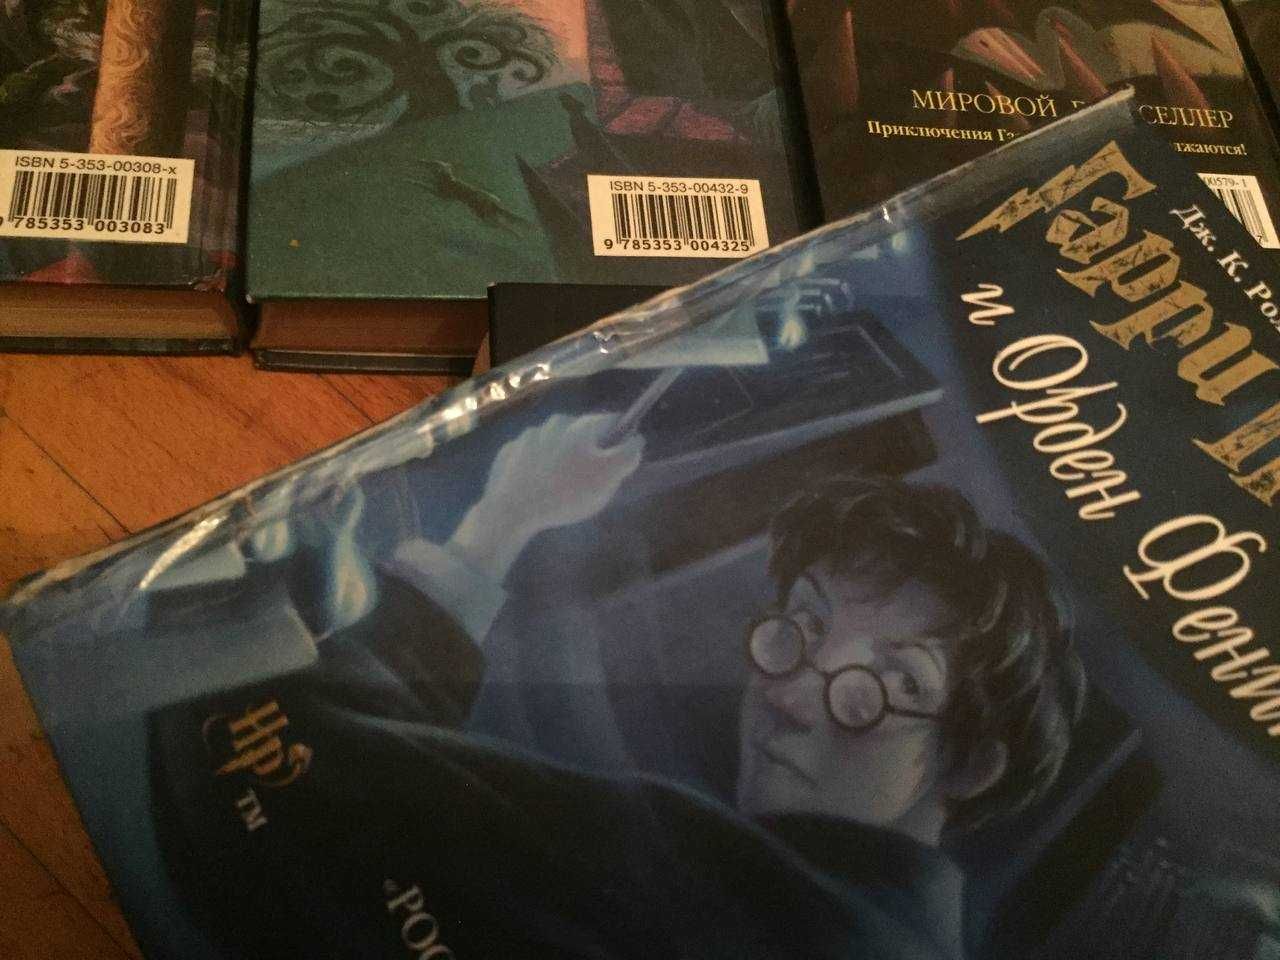 Книги Гарри Поттер в разных изданиях